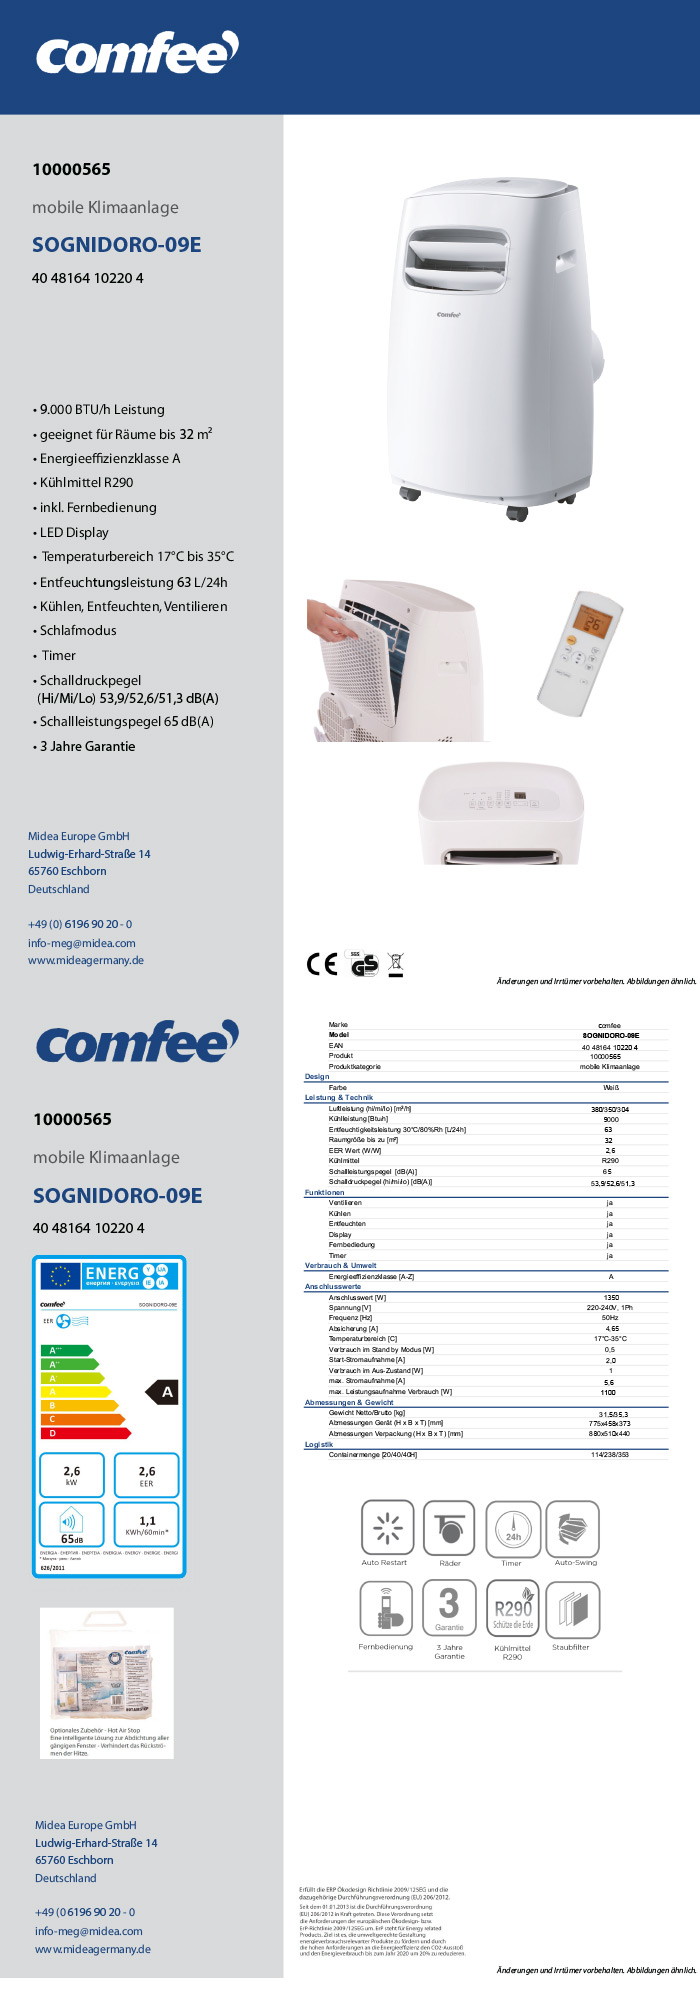 | Klimaanlage mobile LIDL »SOGNIDORO-09E« Comfee